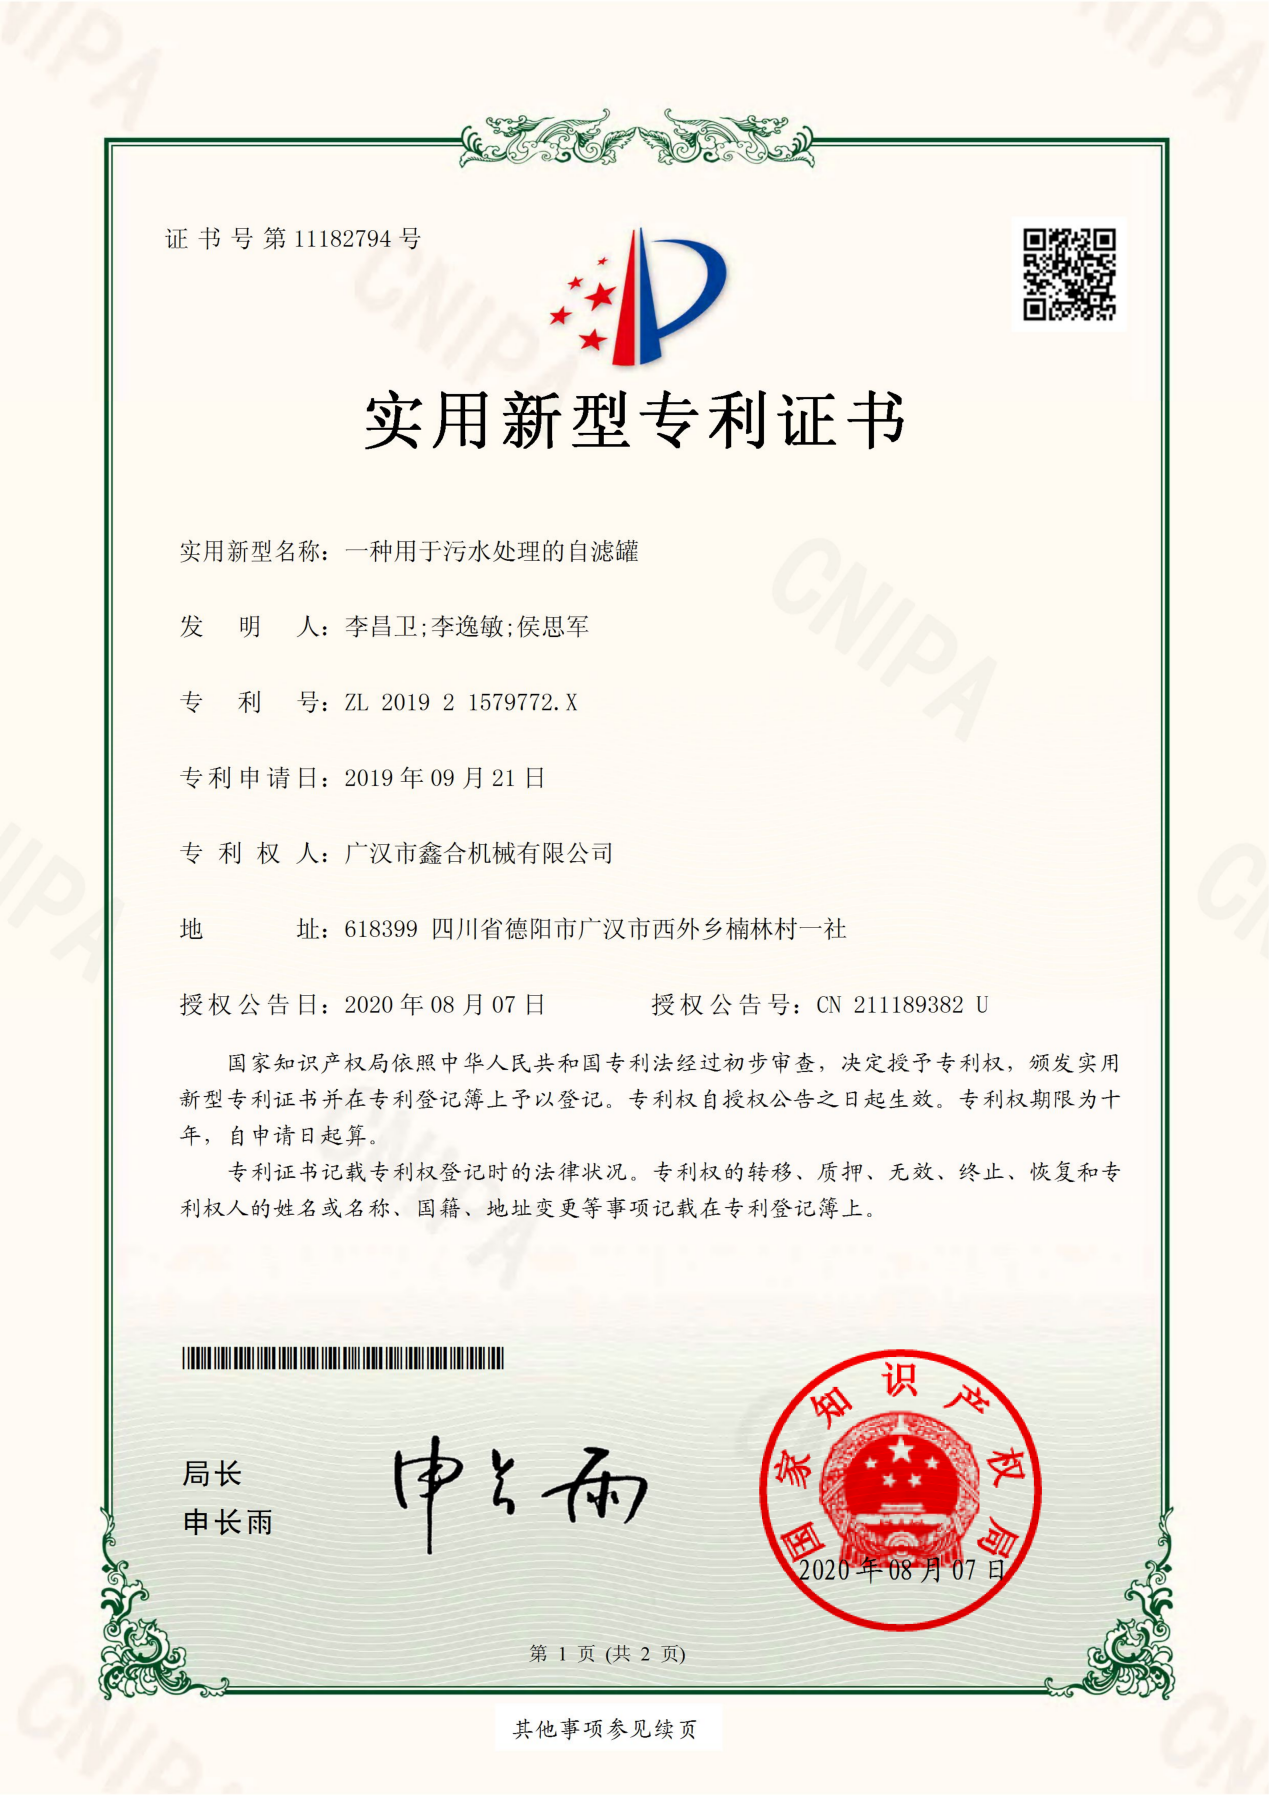 201921579772X-实用新型专利证书(签章)_00